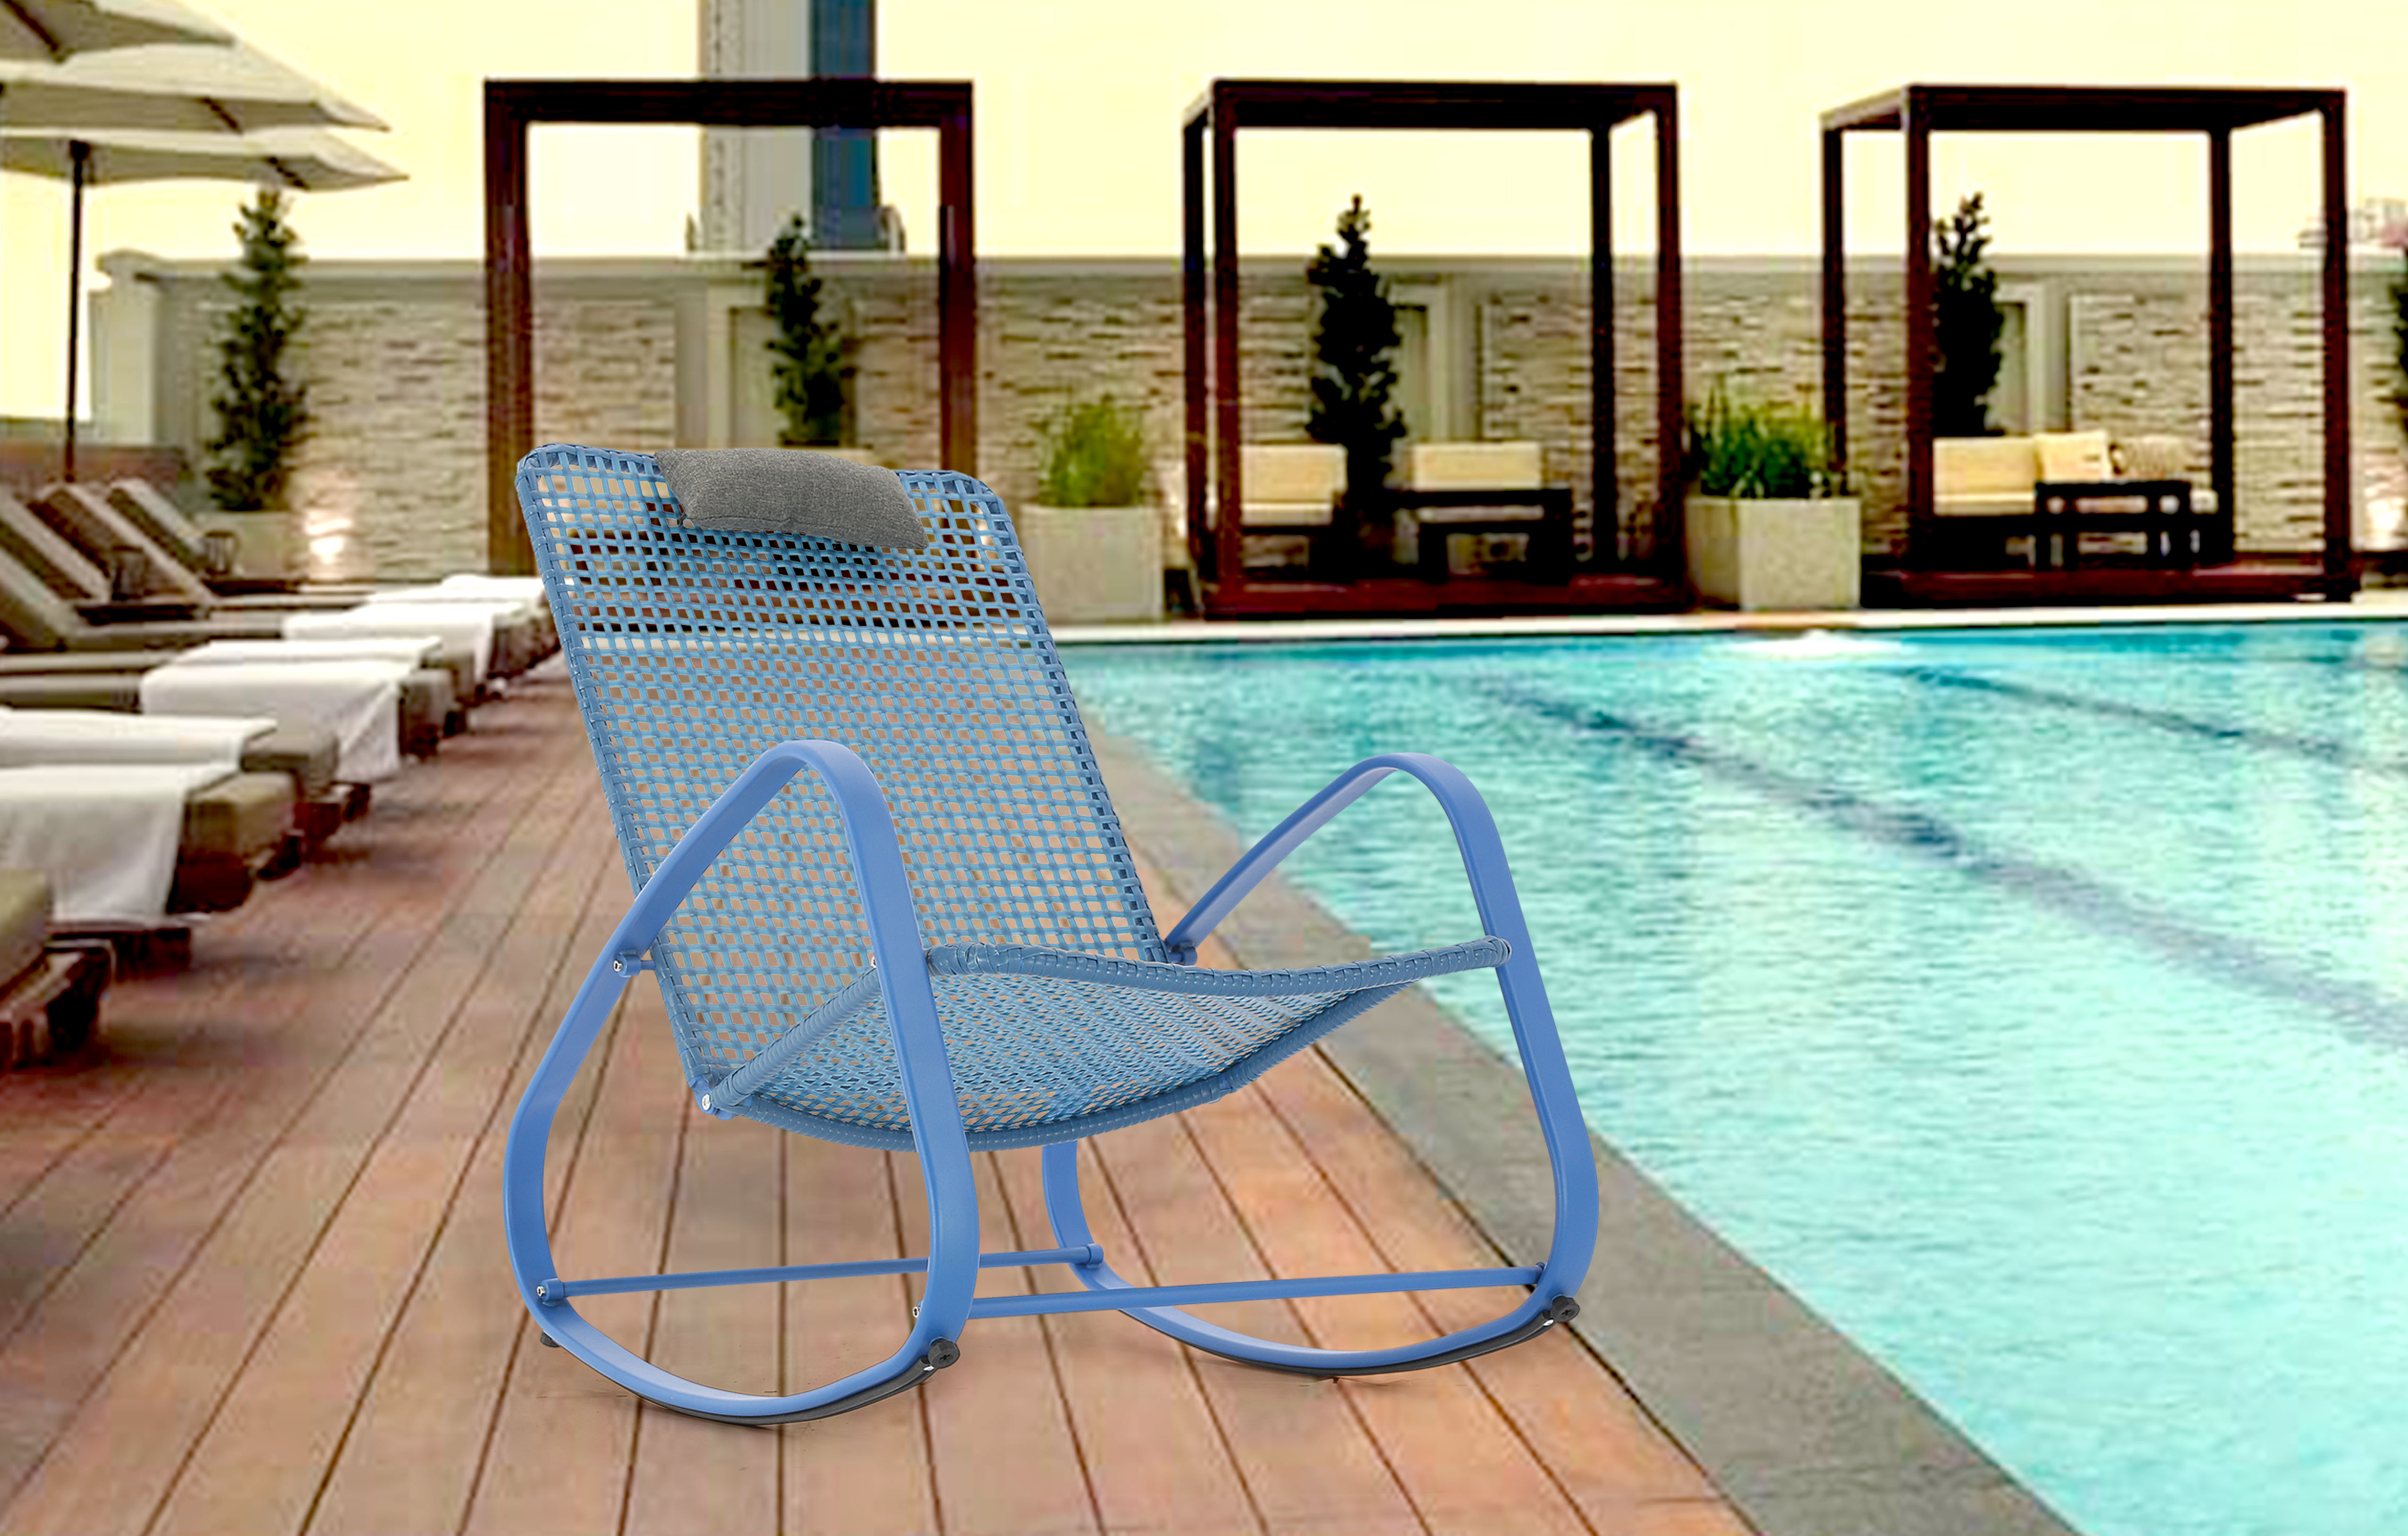 Baner Garden Indoor Outdoor Rocking Lounge Chair Porch Indoor Patio Headrest Furniture, Blue (X62BU) - image 1 of 8